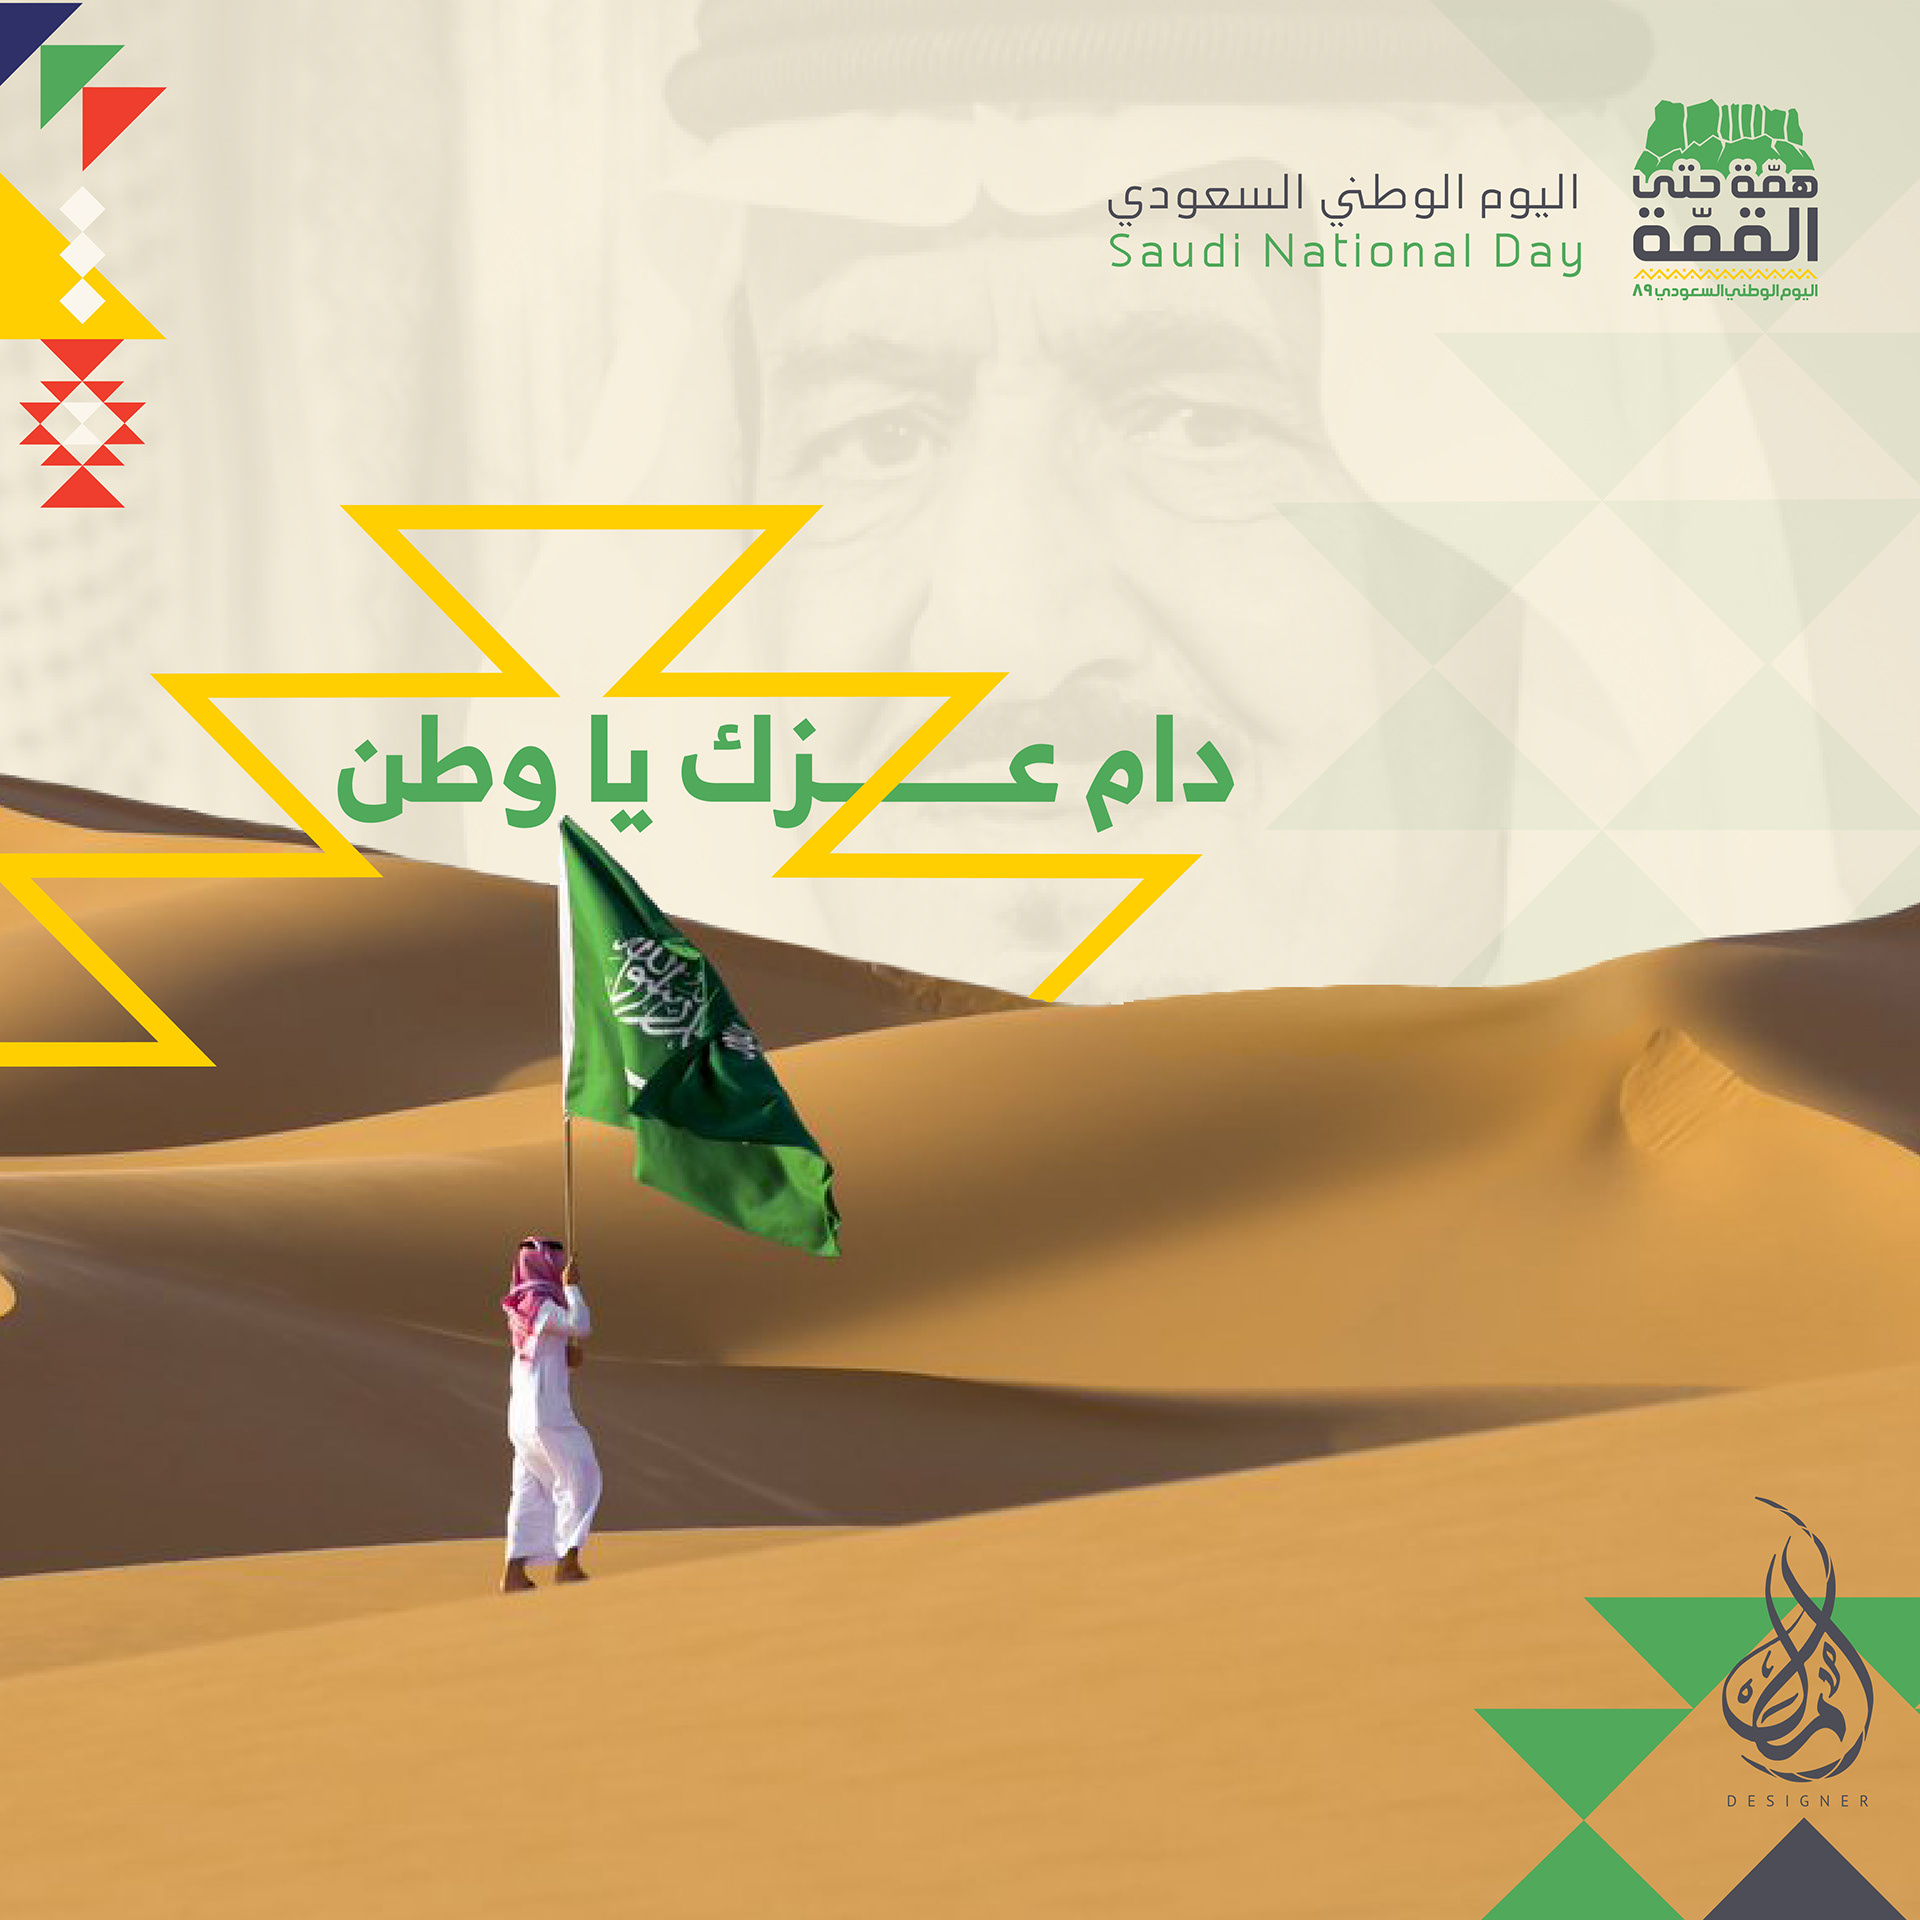 تصميم اليوم الوطني السعودي 89 Saudi national day on Behance